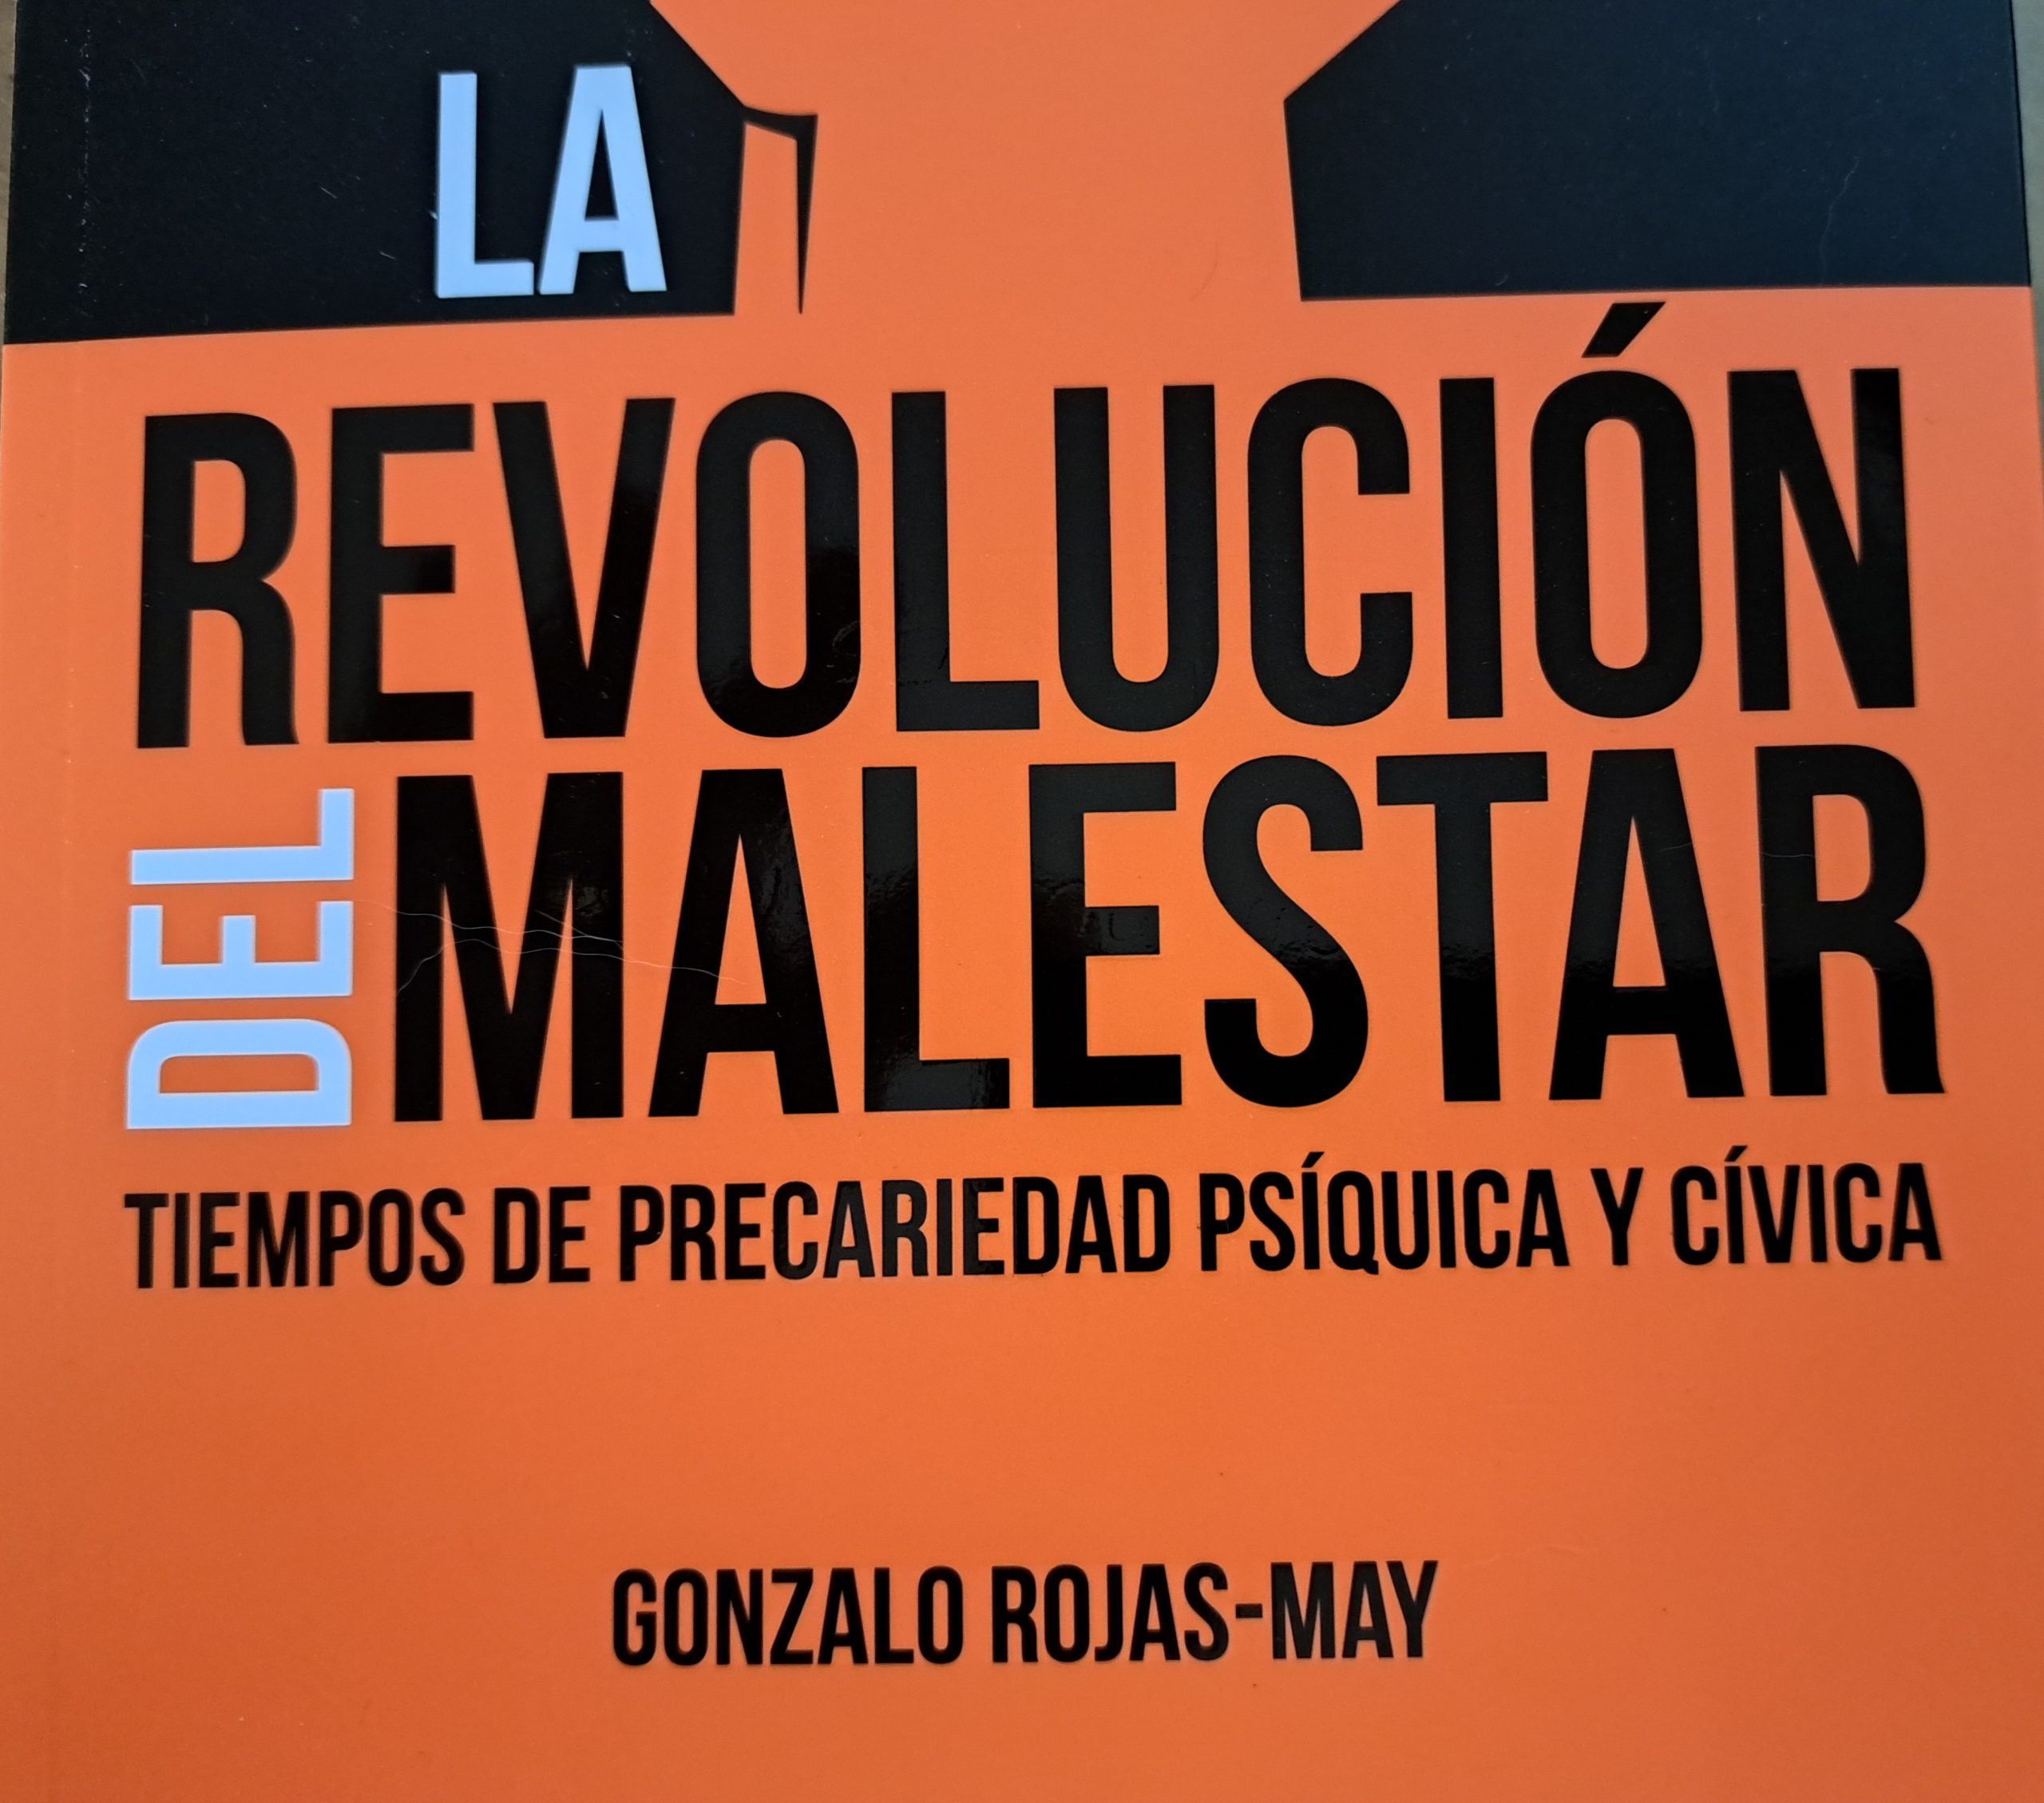 Entrevista (muy sugerente) a Gonzalo Rojas-May